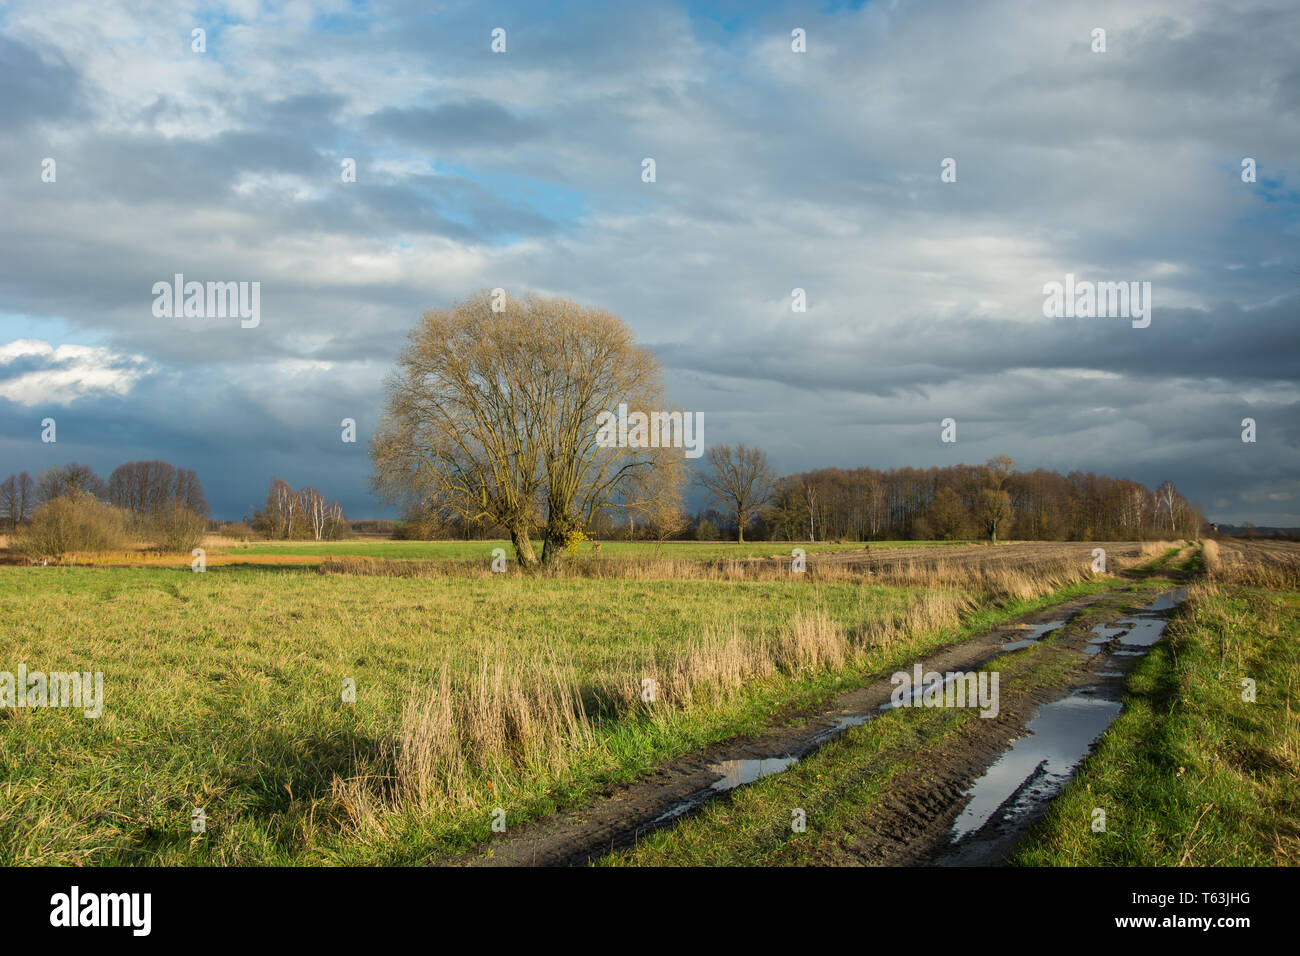 Pozzanghere sulla strada sterrata attraverso i campi, Willow Tree senza foglie e foresta in distanza, piovosa nuvole del cielo Foto Stock